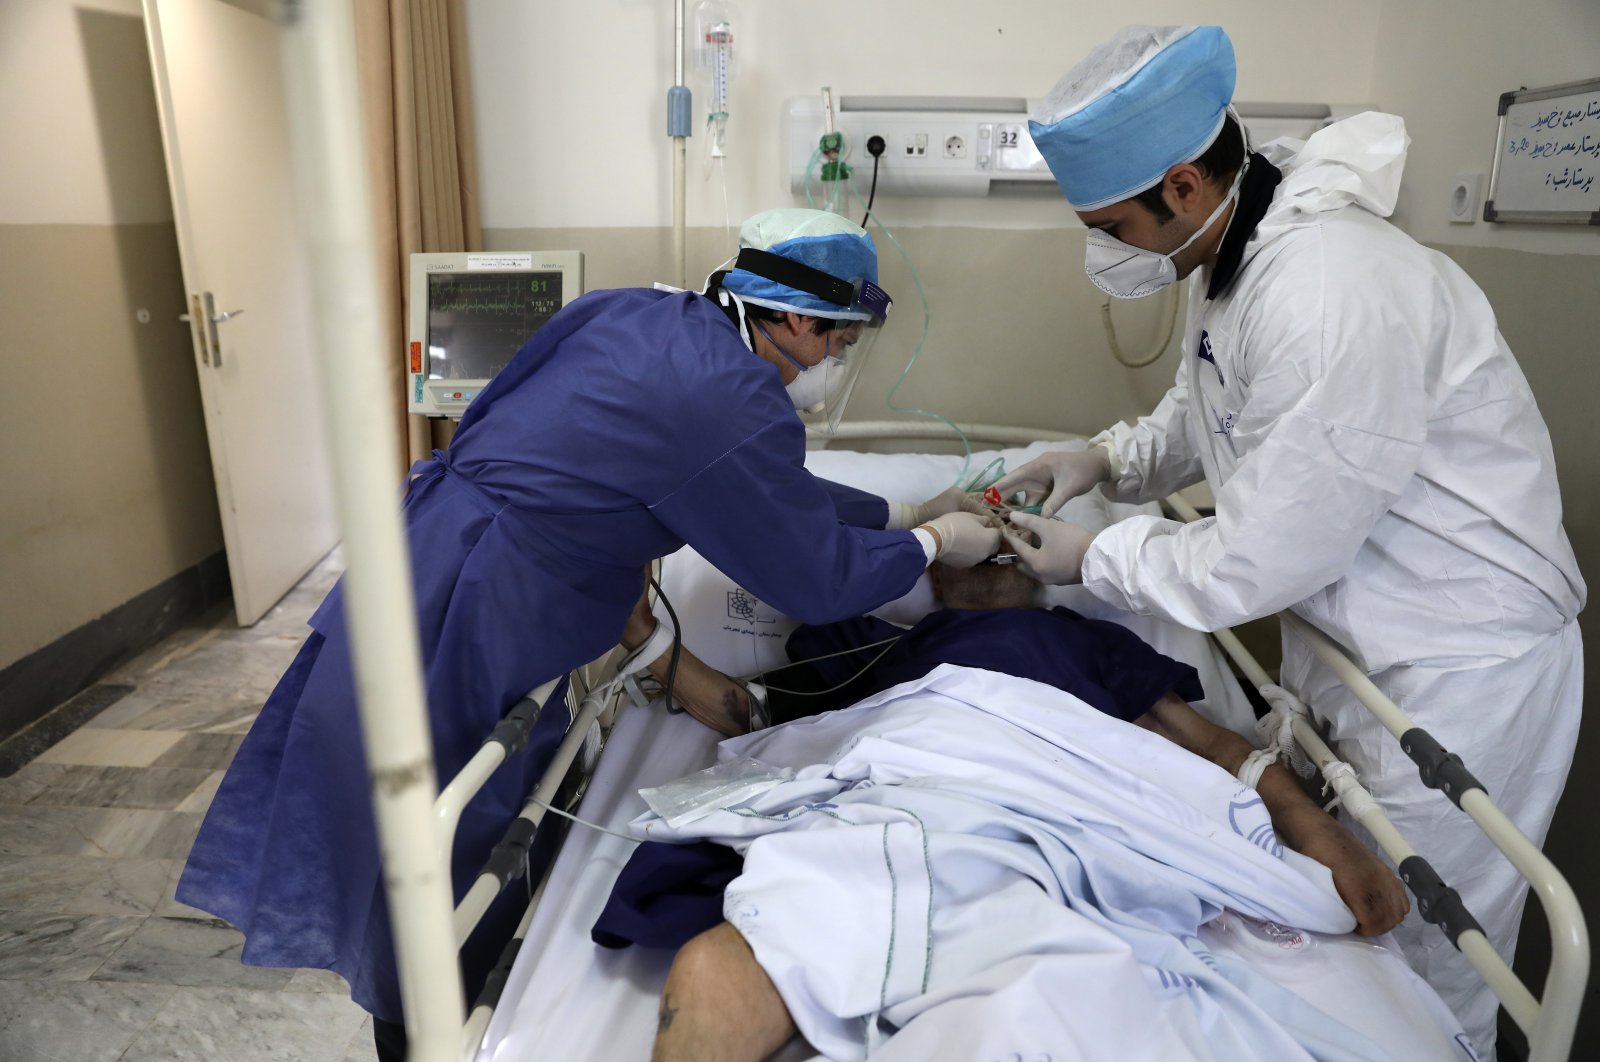 Medics tend to a COVID-19 patient at the Shohadaye Tajrish Hospital in Tehran, Iran, June 16, 2020. (AP Photo/Vahid Salemi)